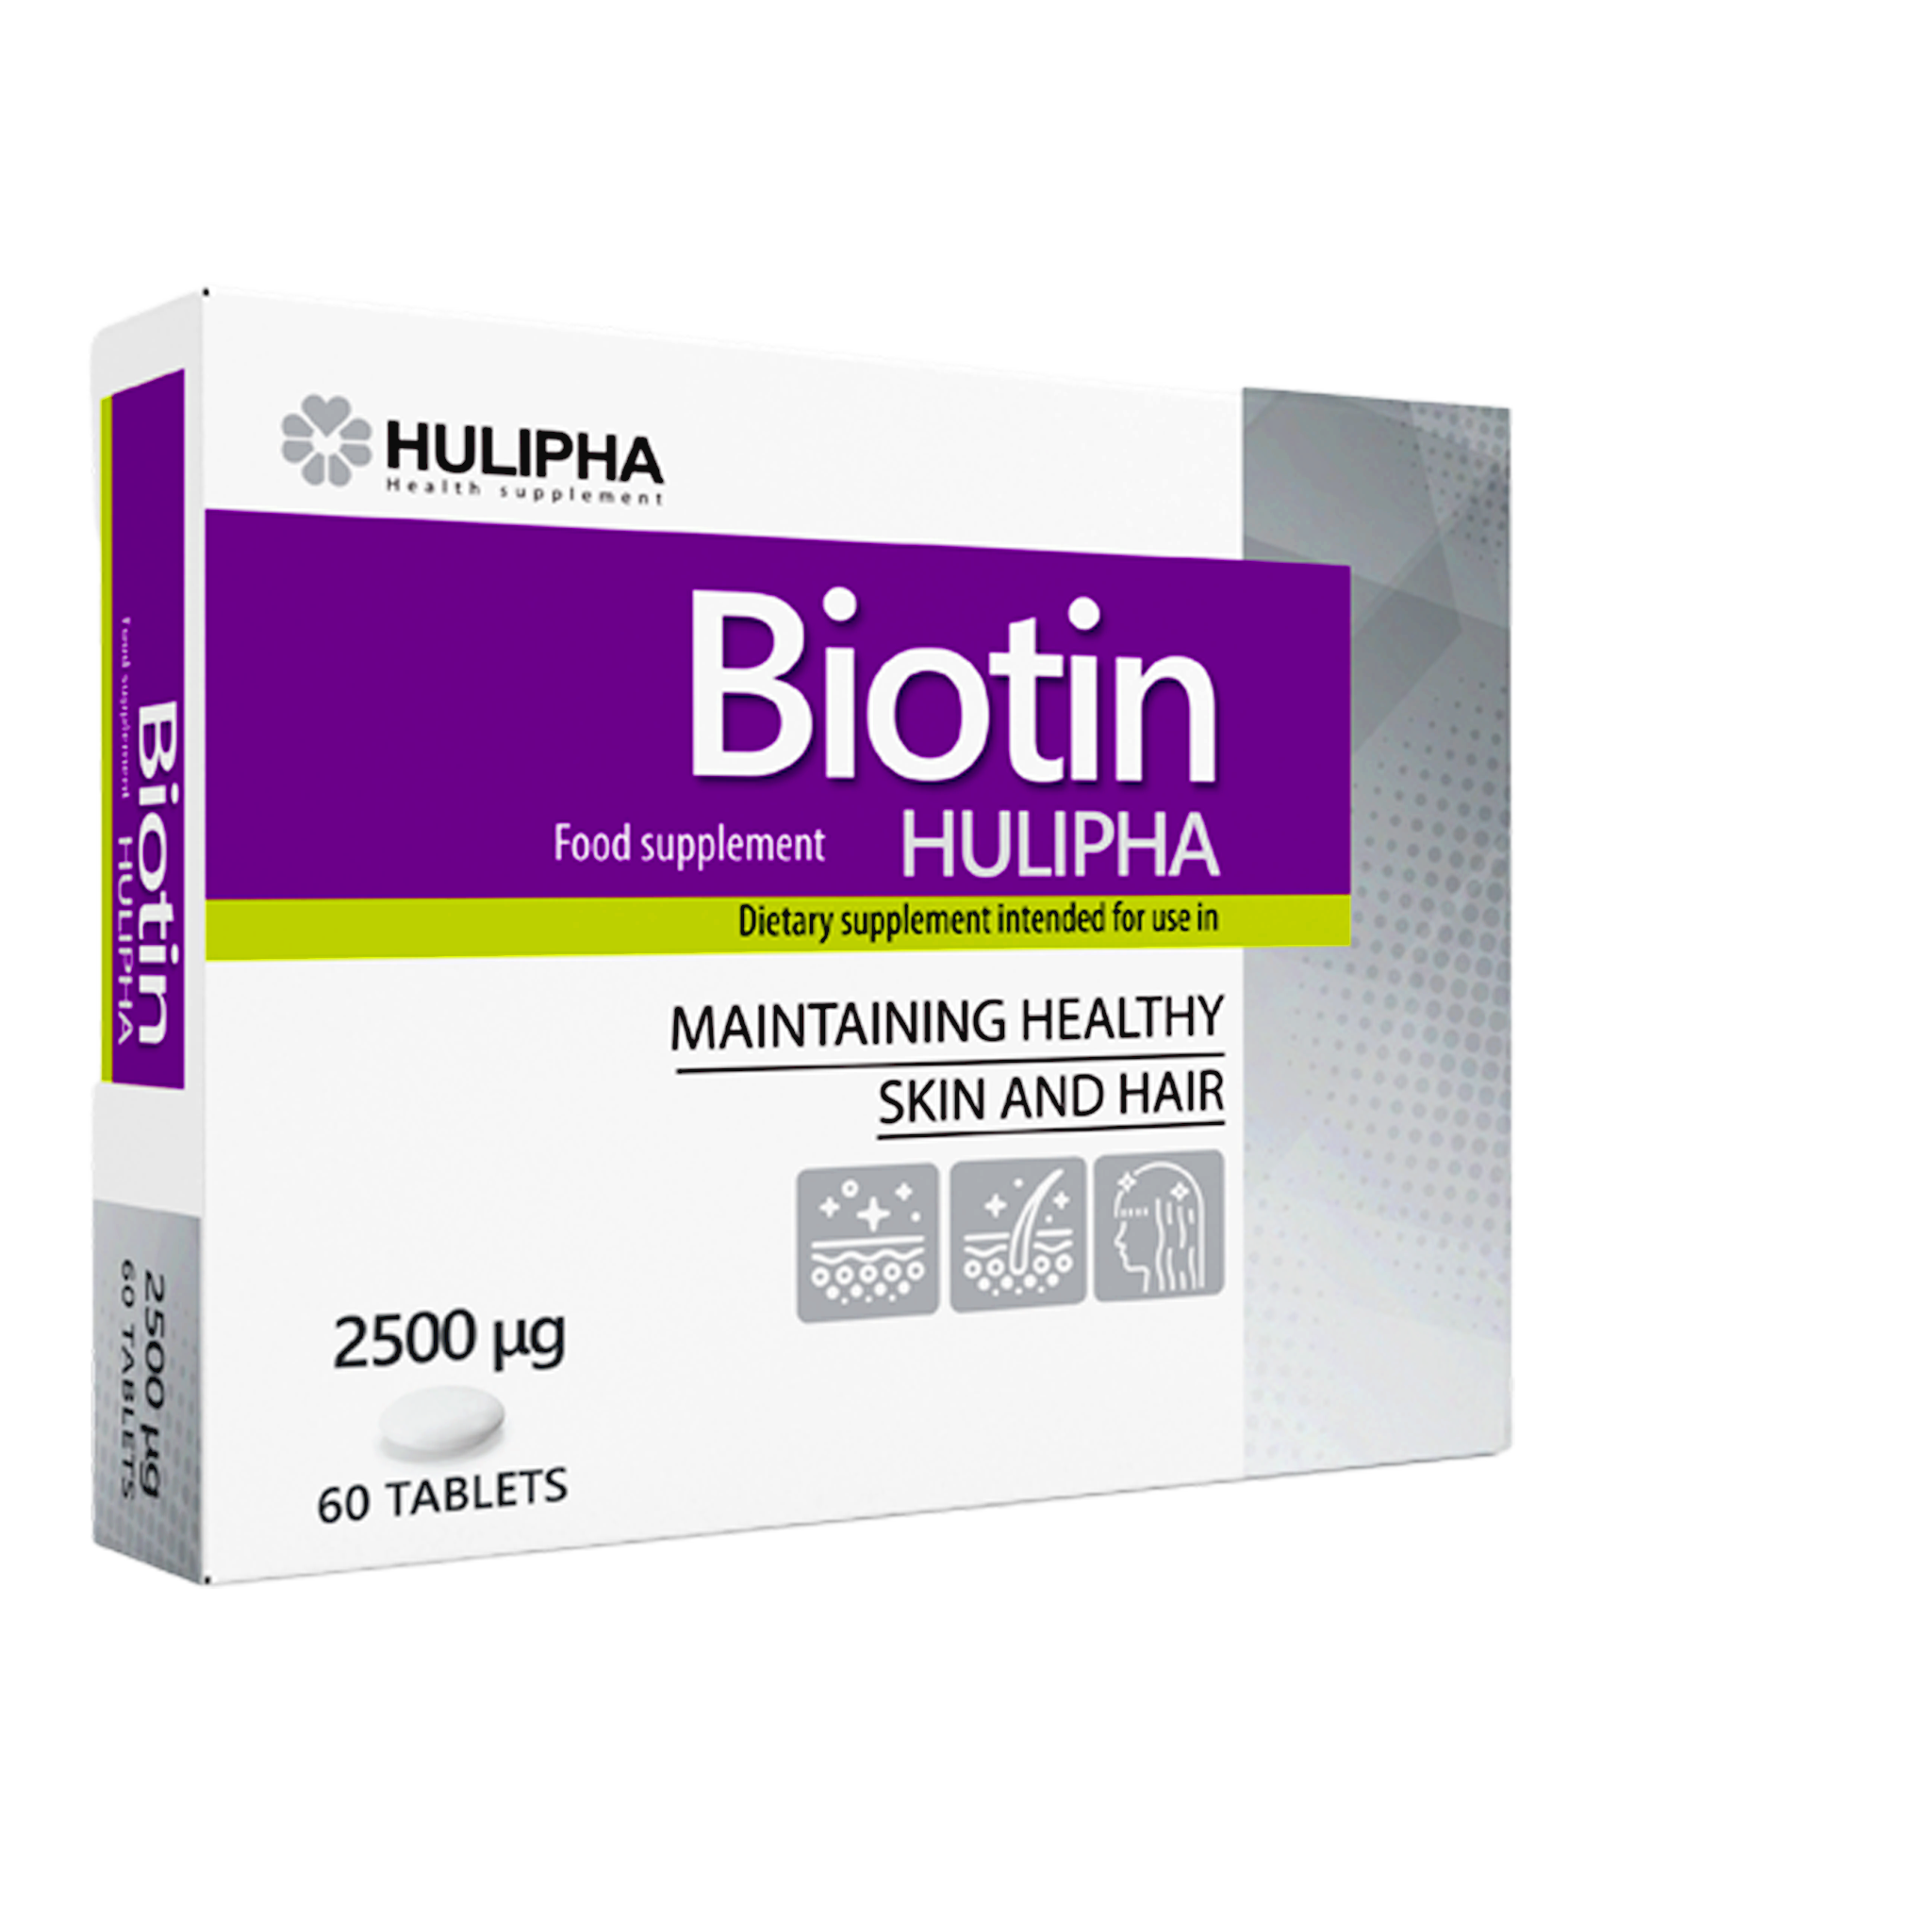 Thực phẩm chức năng Hulipha Biotin tốt cho da, móng và tóc, hỗ trợ ngăn ngừa rụng tóc